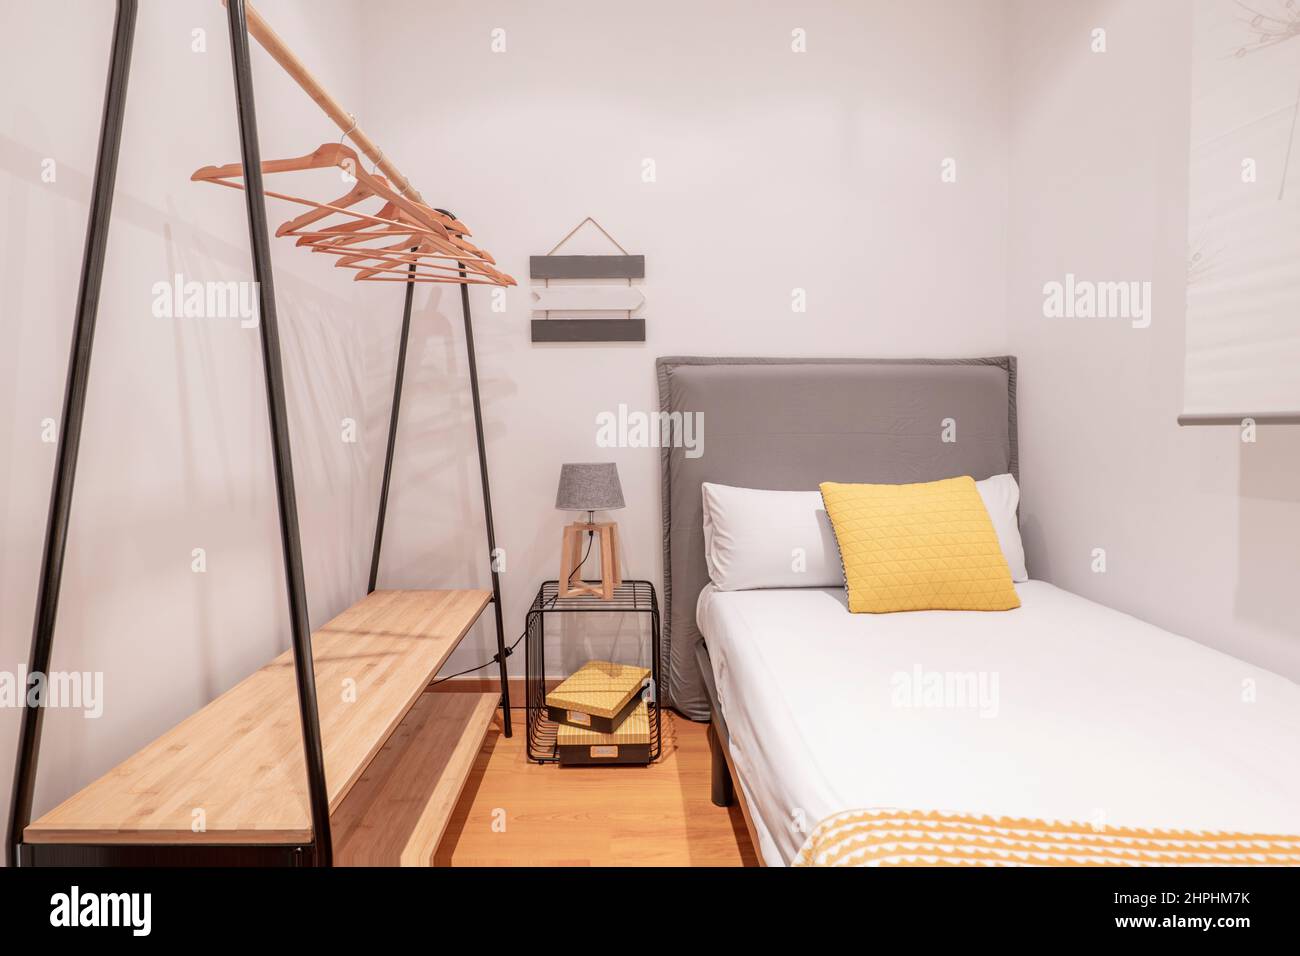 Dormitorio juvenil con cabecero tapizado, cojín amarillo, suelos de madera  y caballete con perchas de madera Fotografía de stock - Alamy